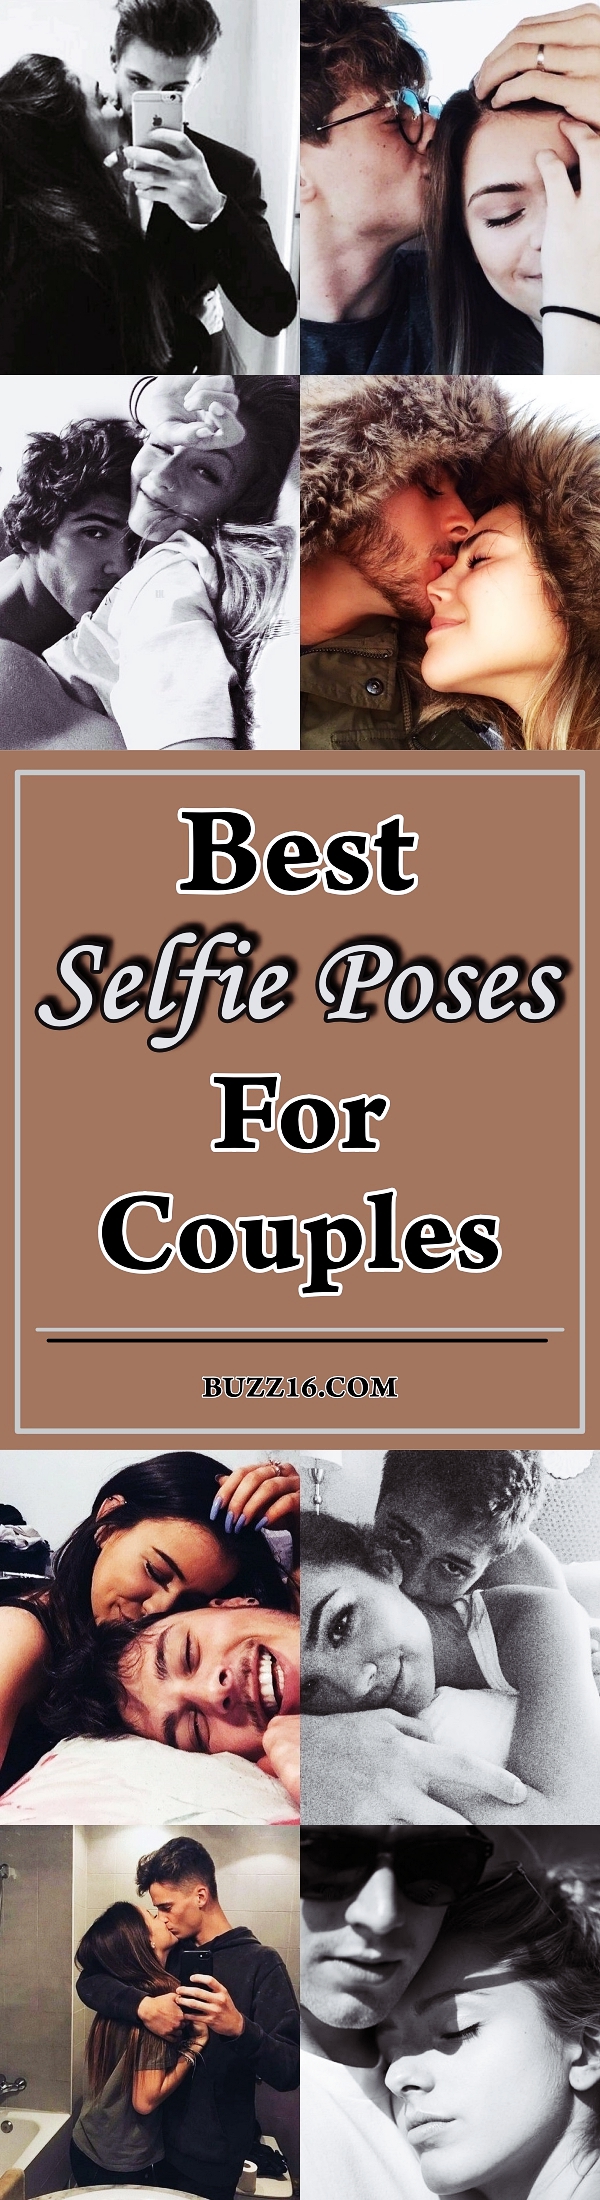 mature couple sex selfie